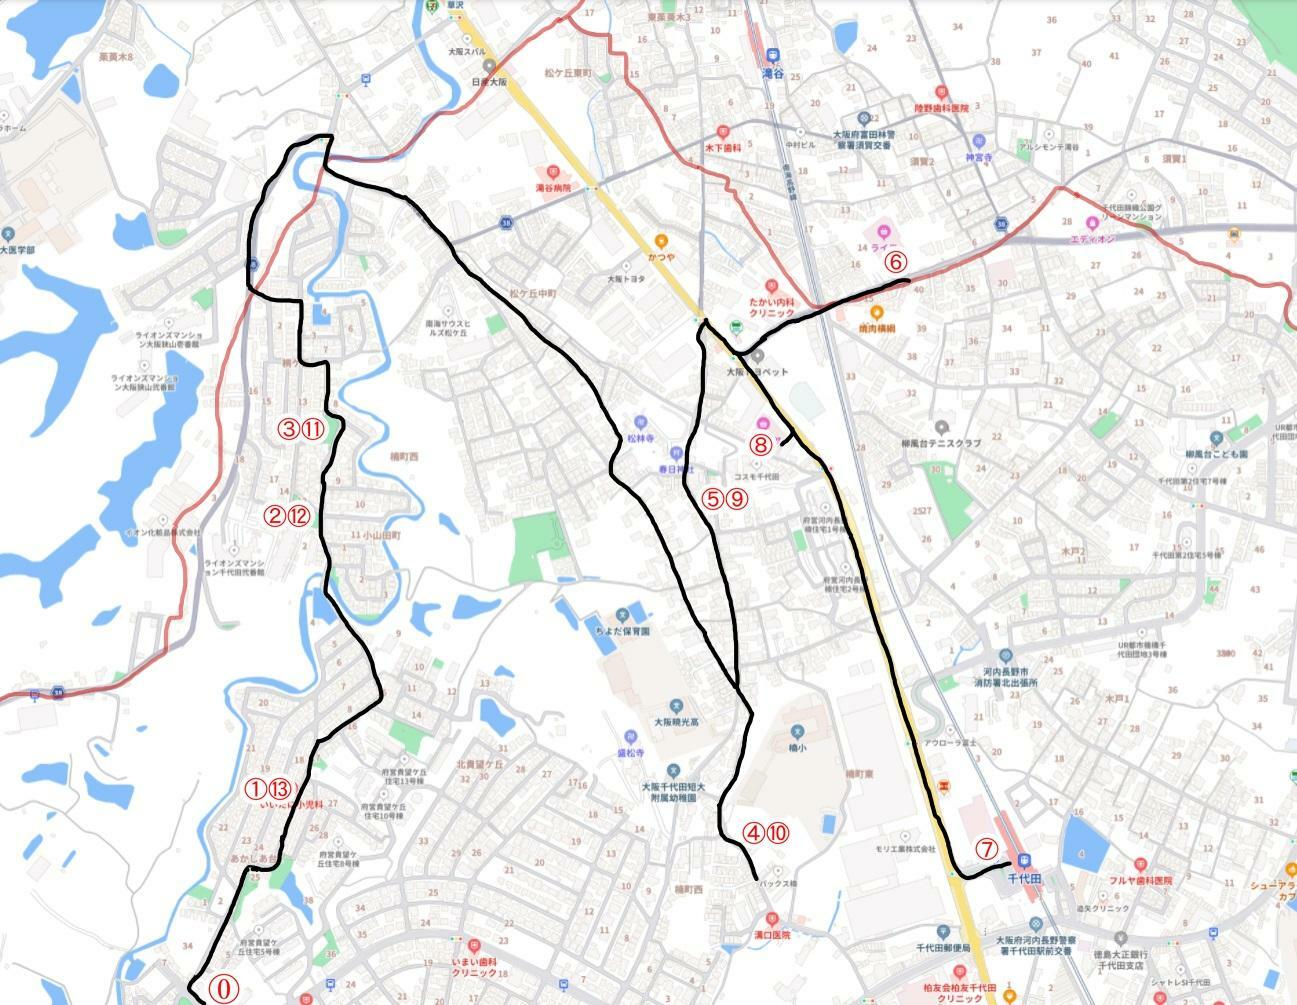 黒線がバスのルート、赤線は市境